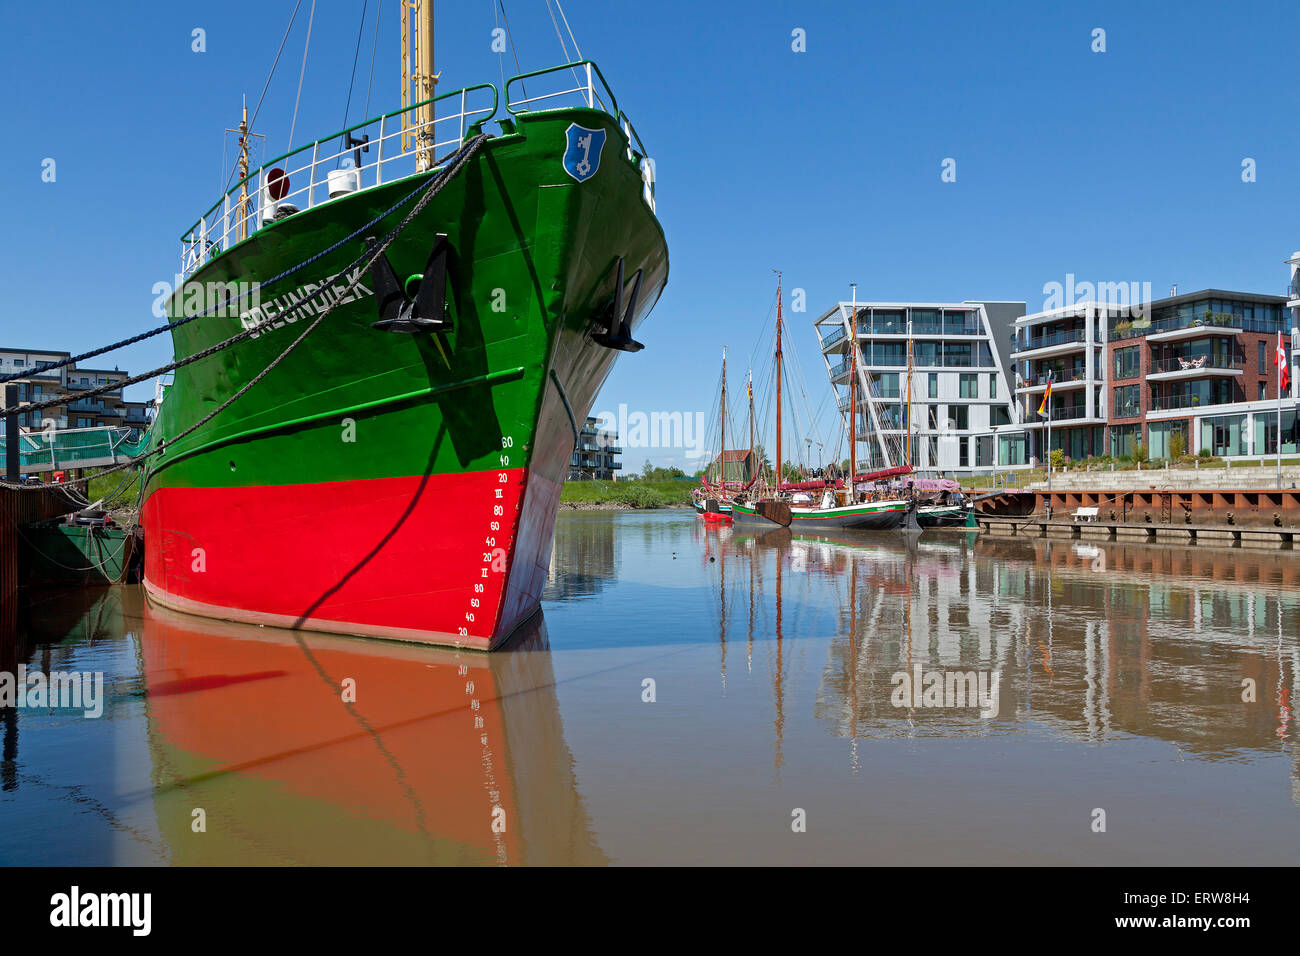 Museum ship 'Greundiek', Harbour City, stade, Basse-Saxe, Allemagne Banque D'Images